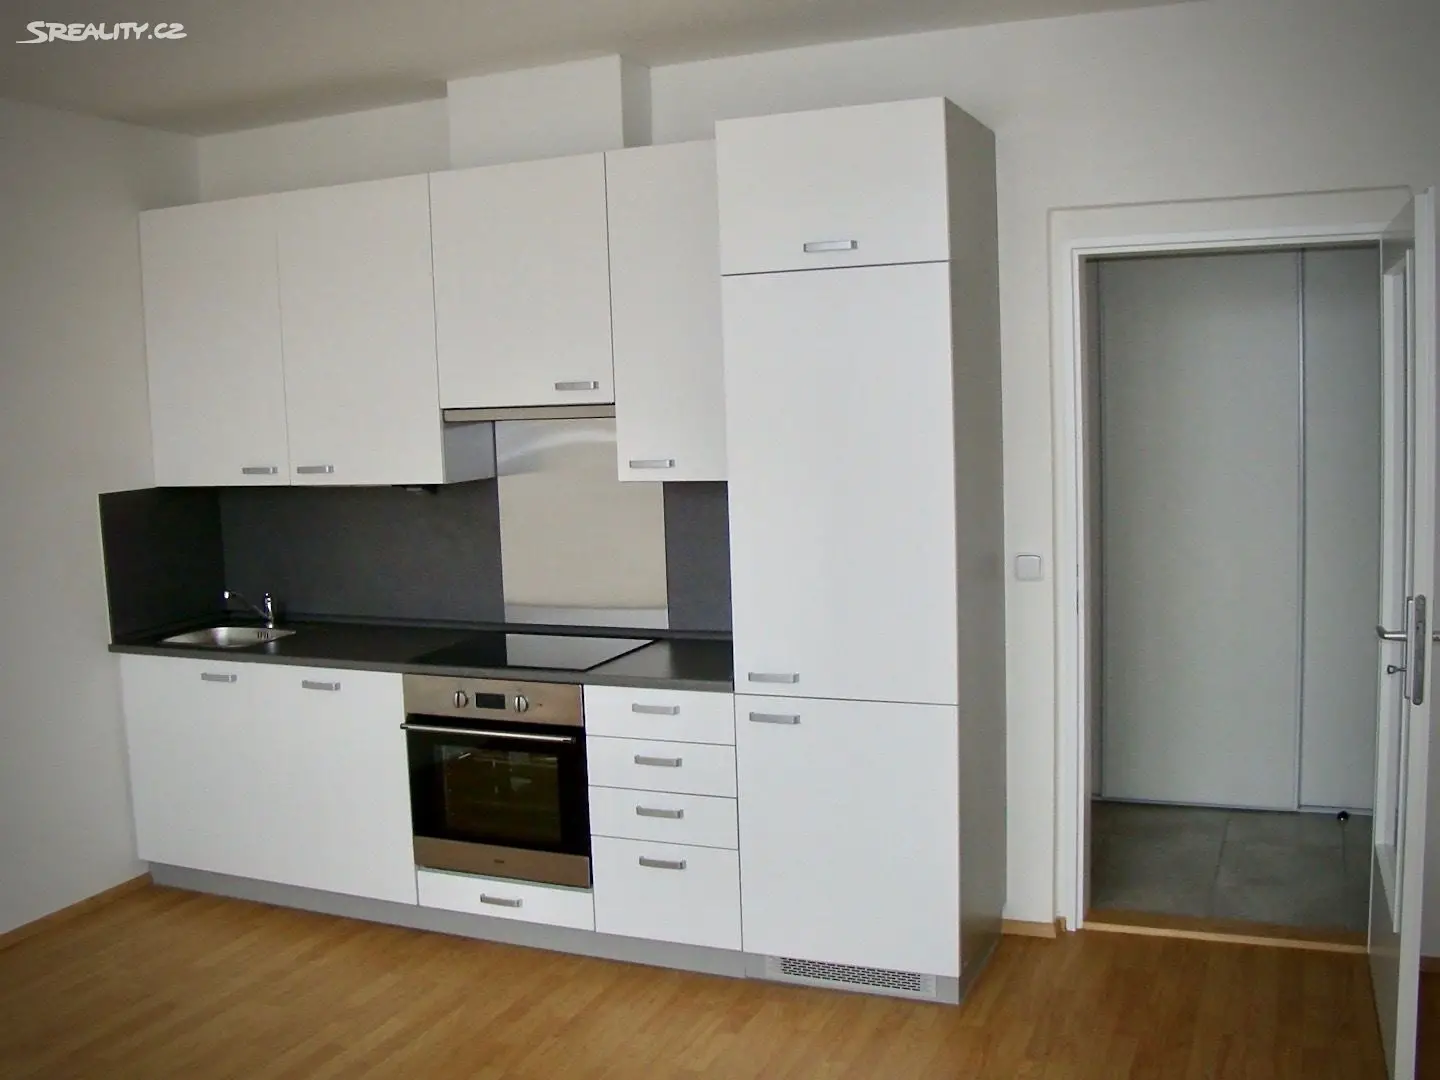 Pronájem bytu 1+kk 29 m², Komenského, Nové Město nad Metují